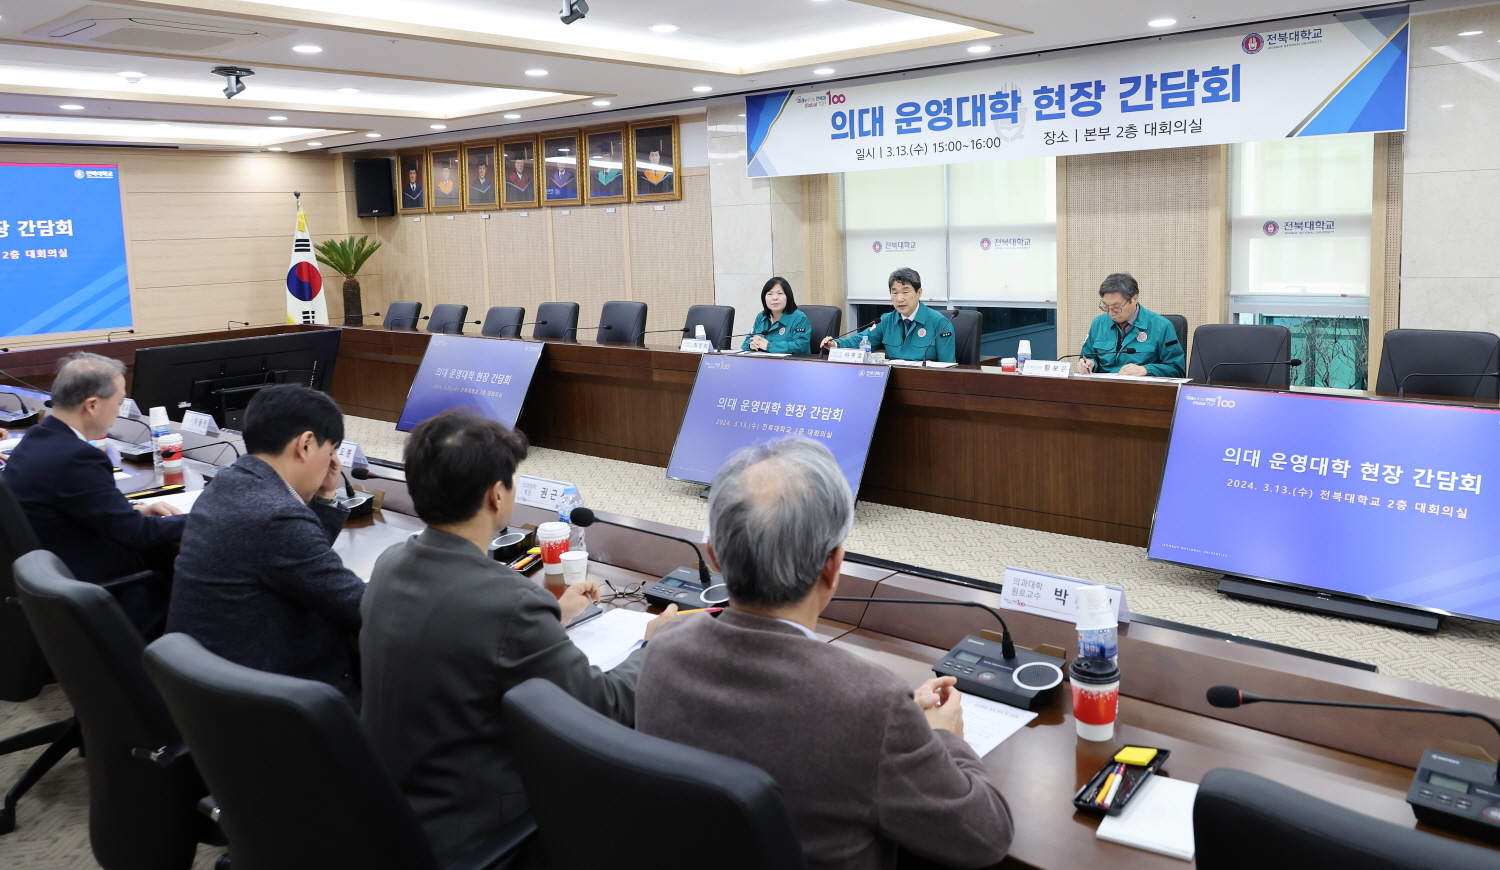 이주호 부총리 겸 교육부장관은 3월 13일(수), 전북대학교를 방문하여 총장, 의대학장 등 대학관계자와 간담회를 개최했다.